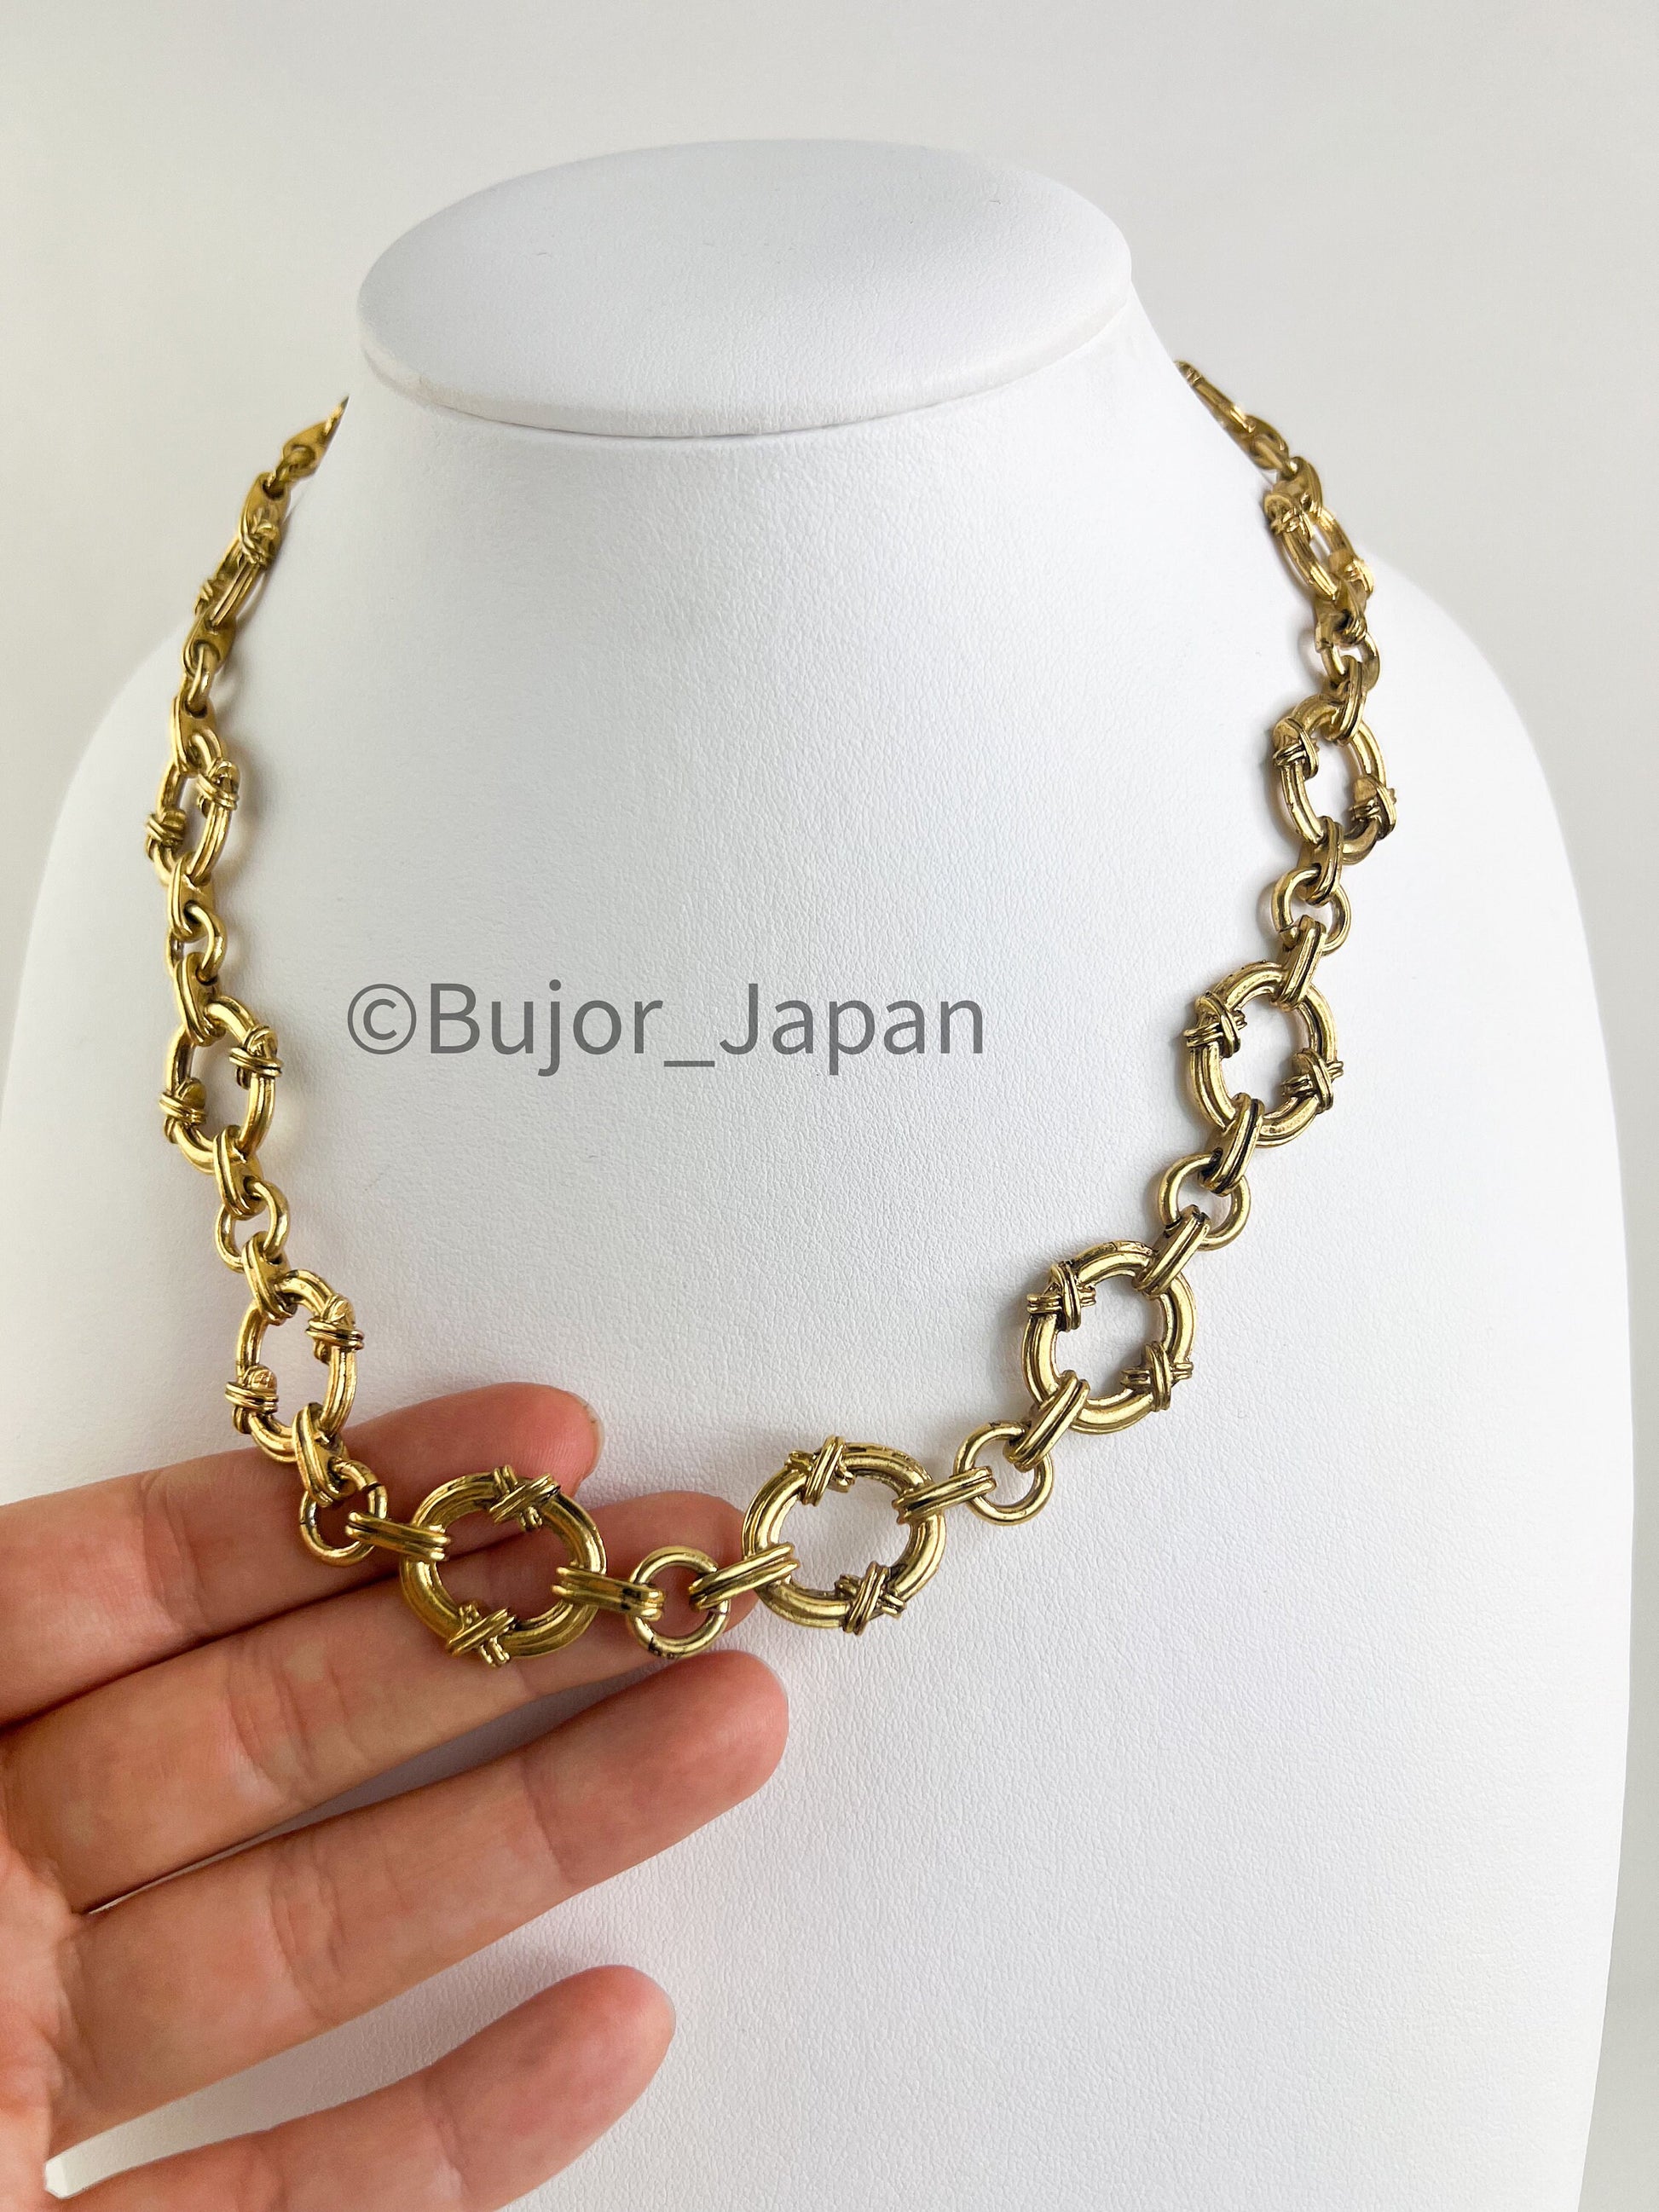 YSL Vintage, Yves Saint Laurent Necklace, Gold Chunky Chain Necklace, link chain necklace, Minimalist Necklace, necklace unisex